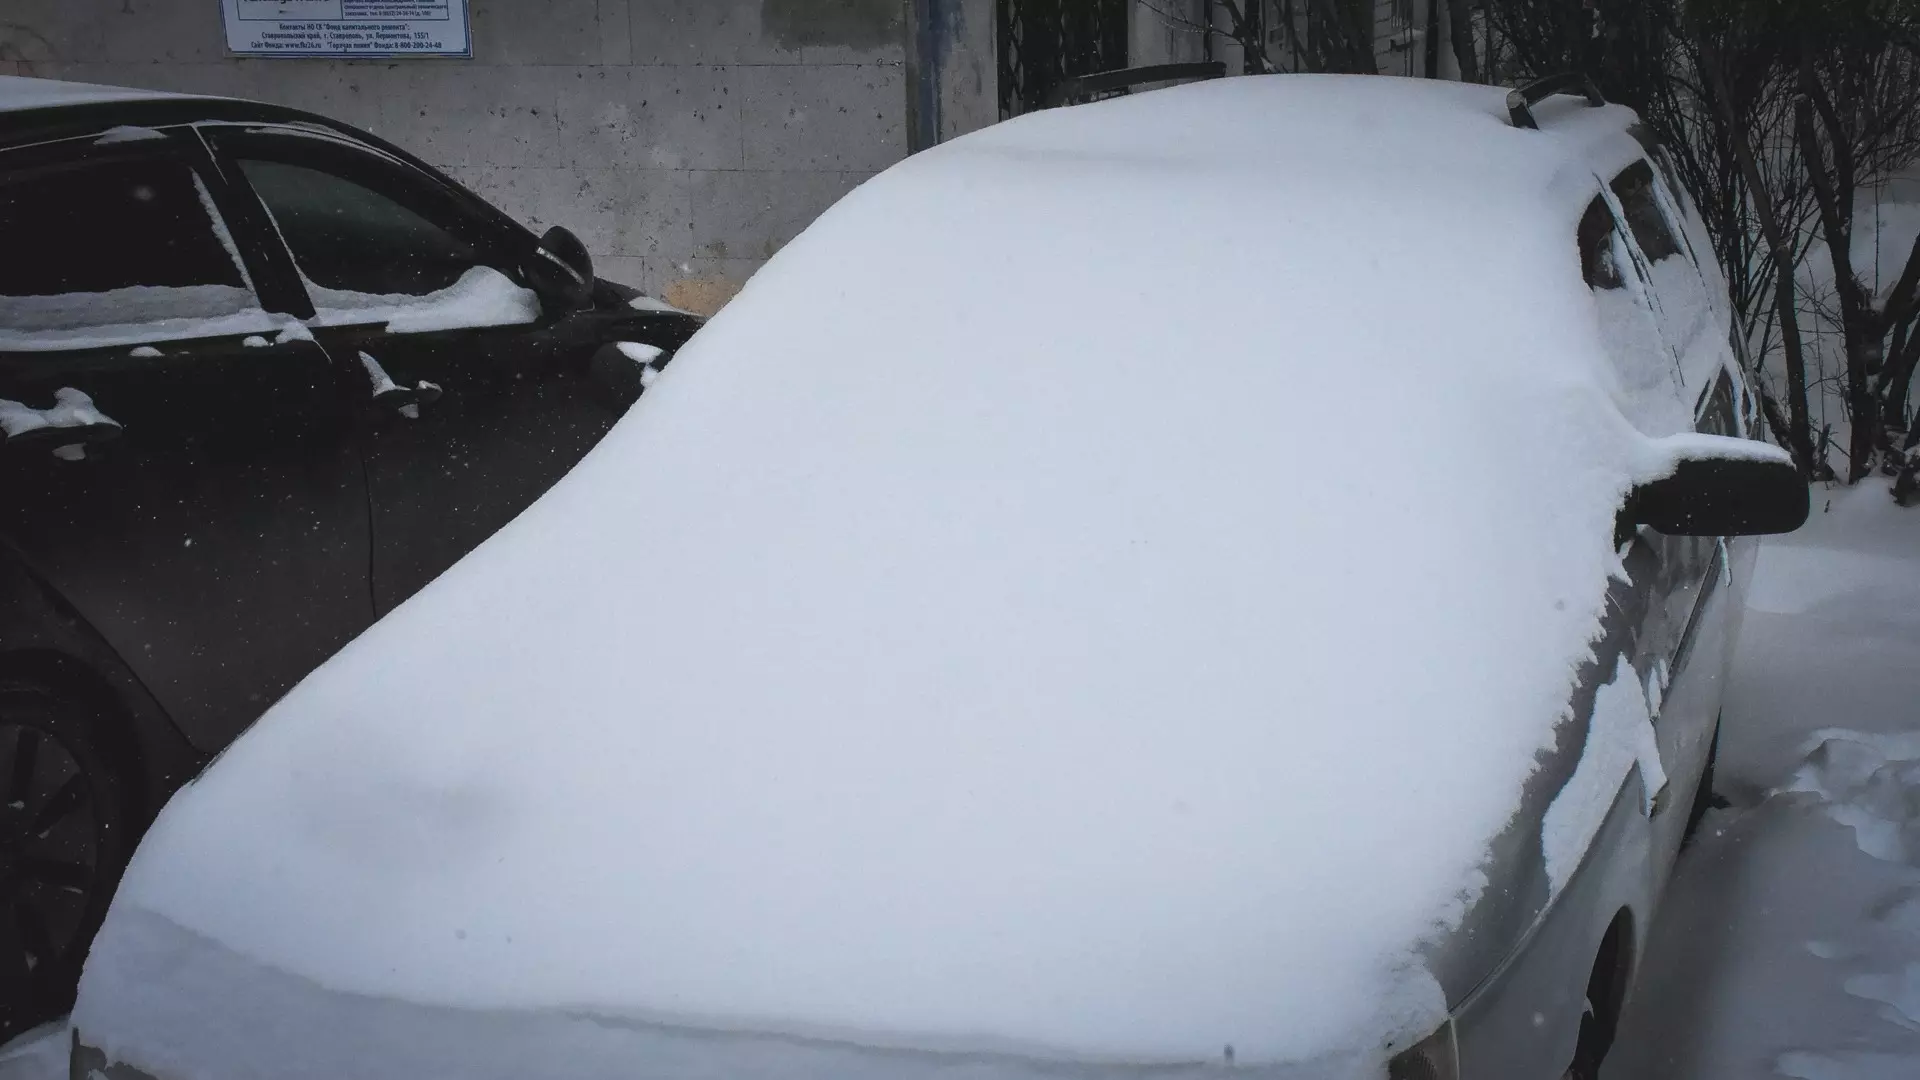 УК в Екатеринбурге заплатит почти 100 тысяч за падение снега на автомобиль